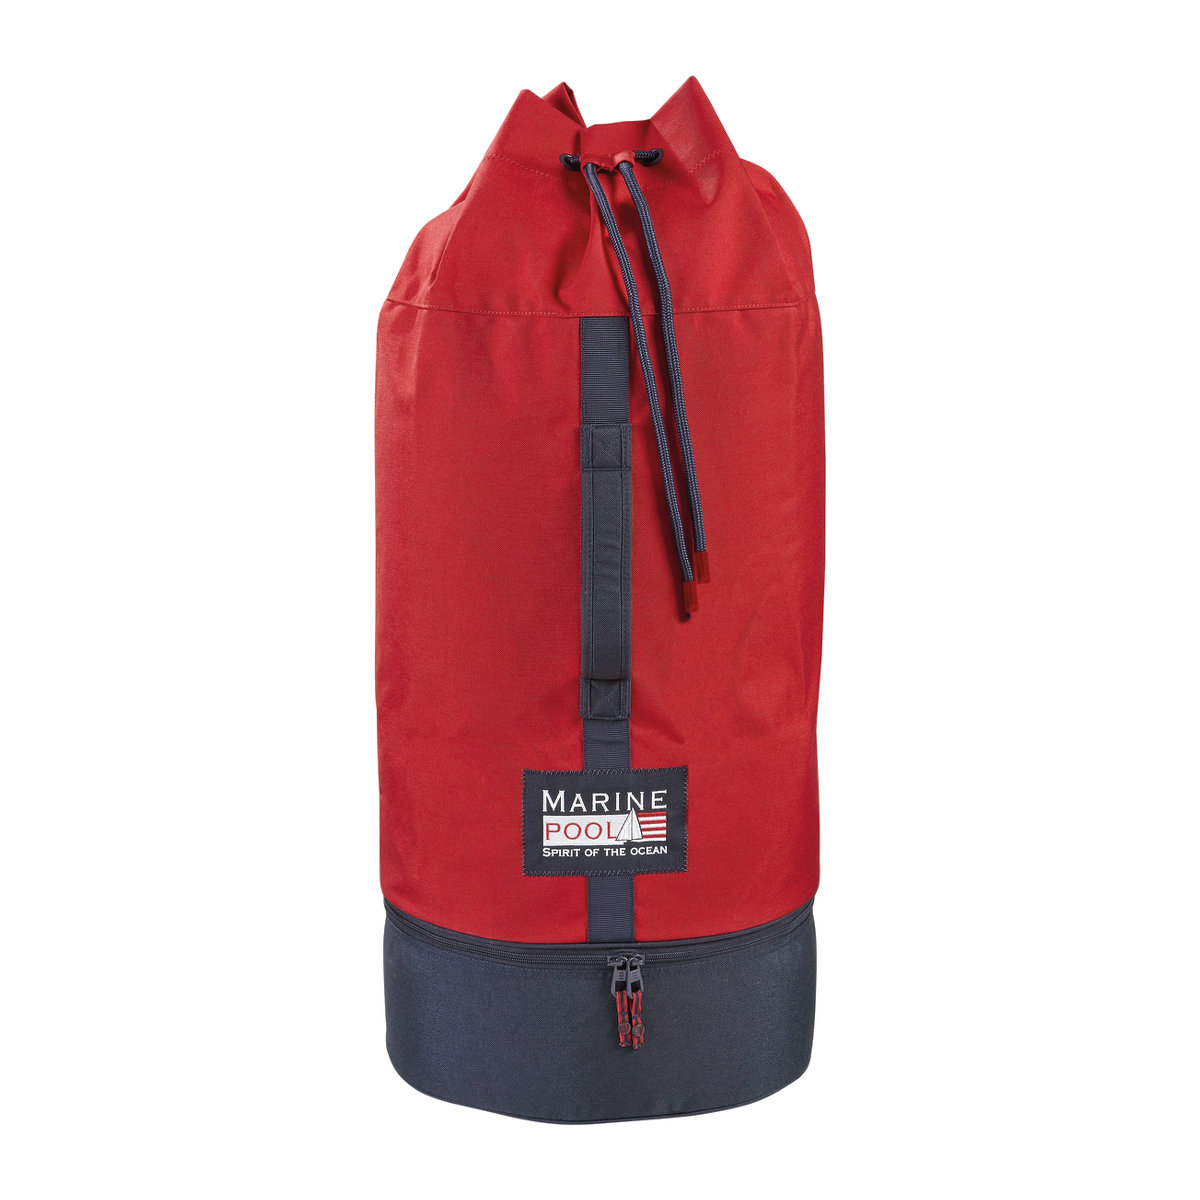 Marinepool Classic II sac marin - rouge/bleu marine, 110 L